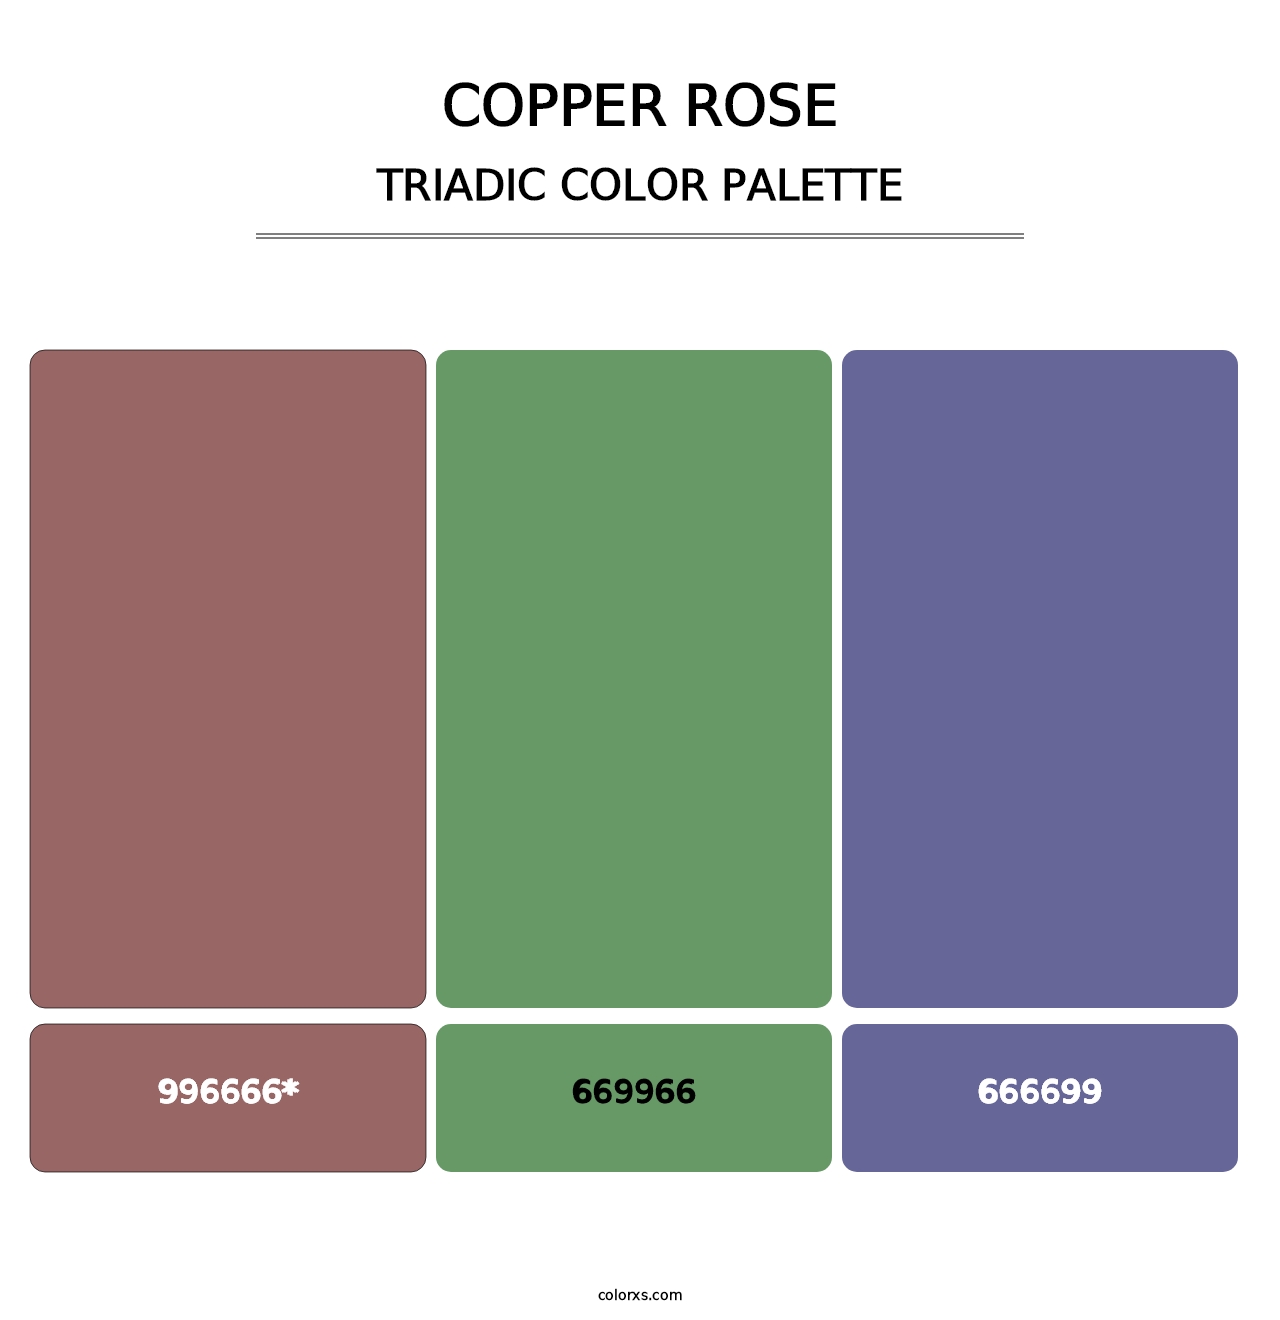 Copper rose - Triadic Color Palette